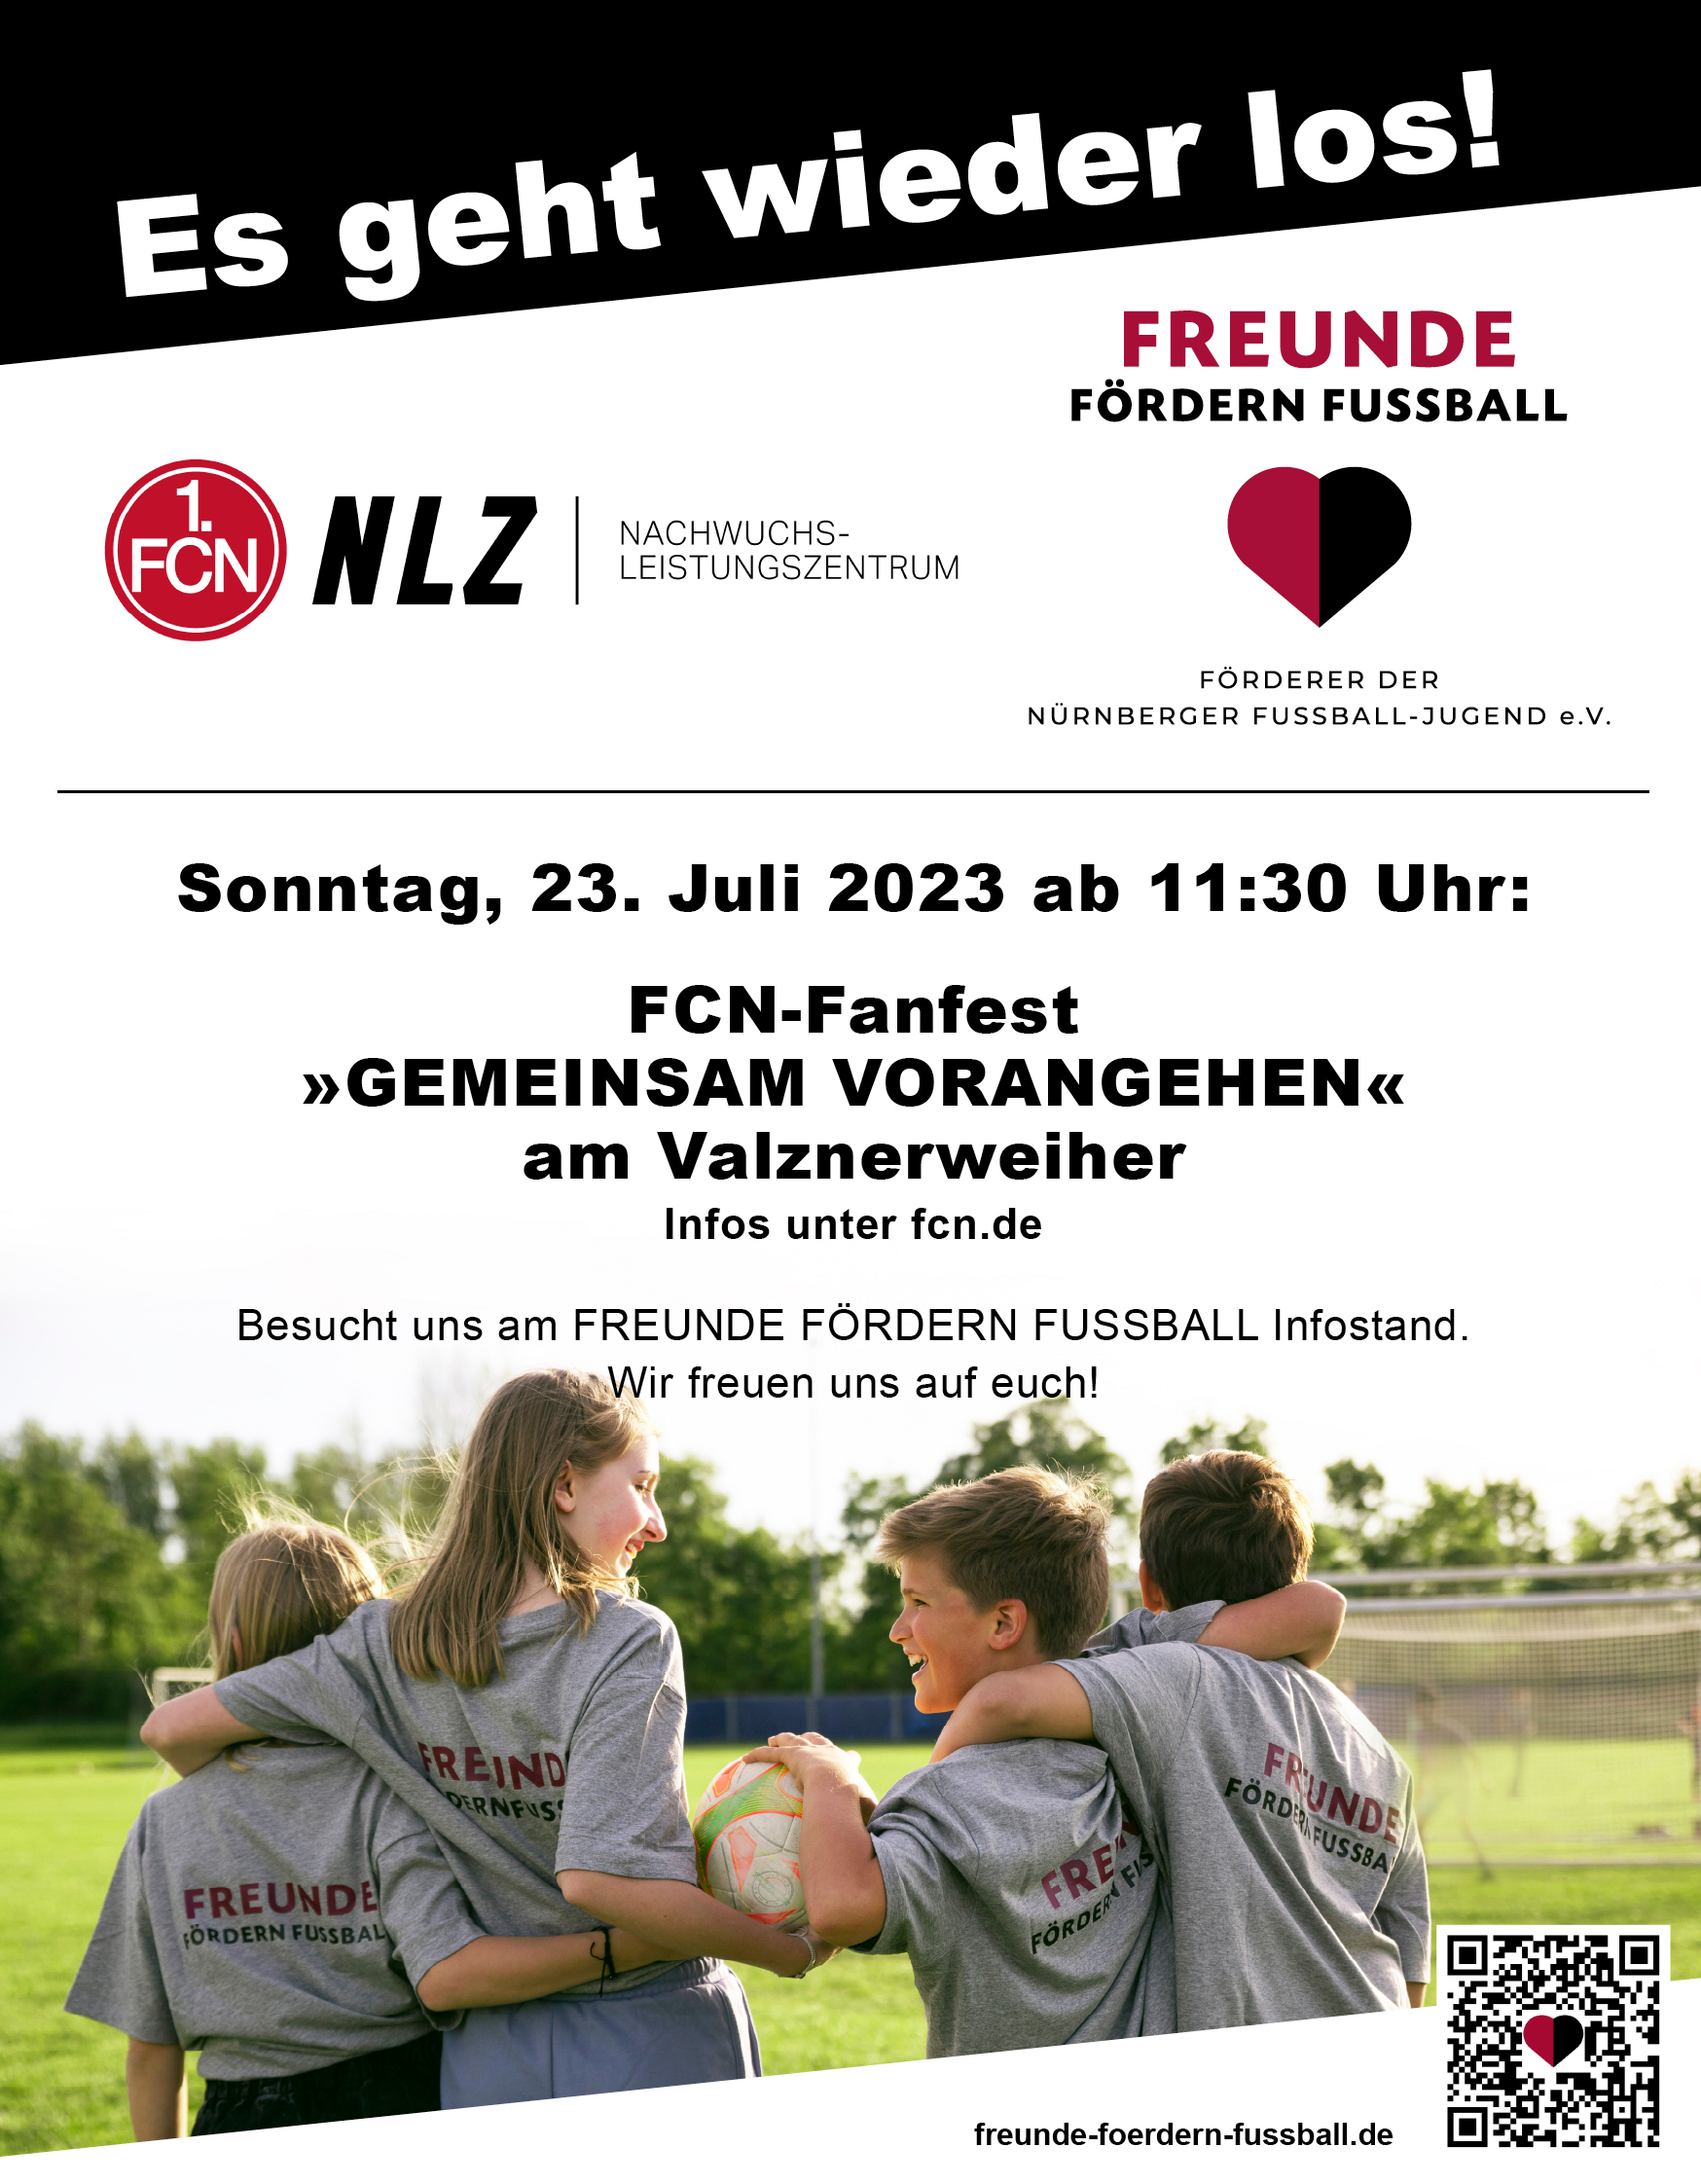 FCN-Fanfest am 23.07.2023 ab 11:30 am Valznerweiher